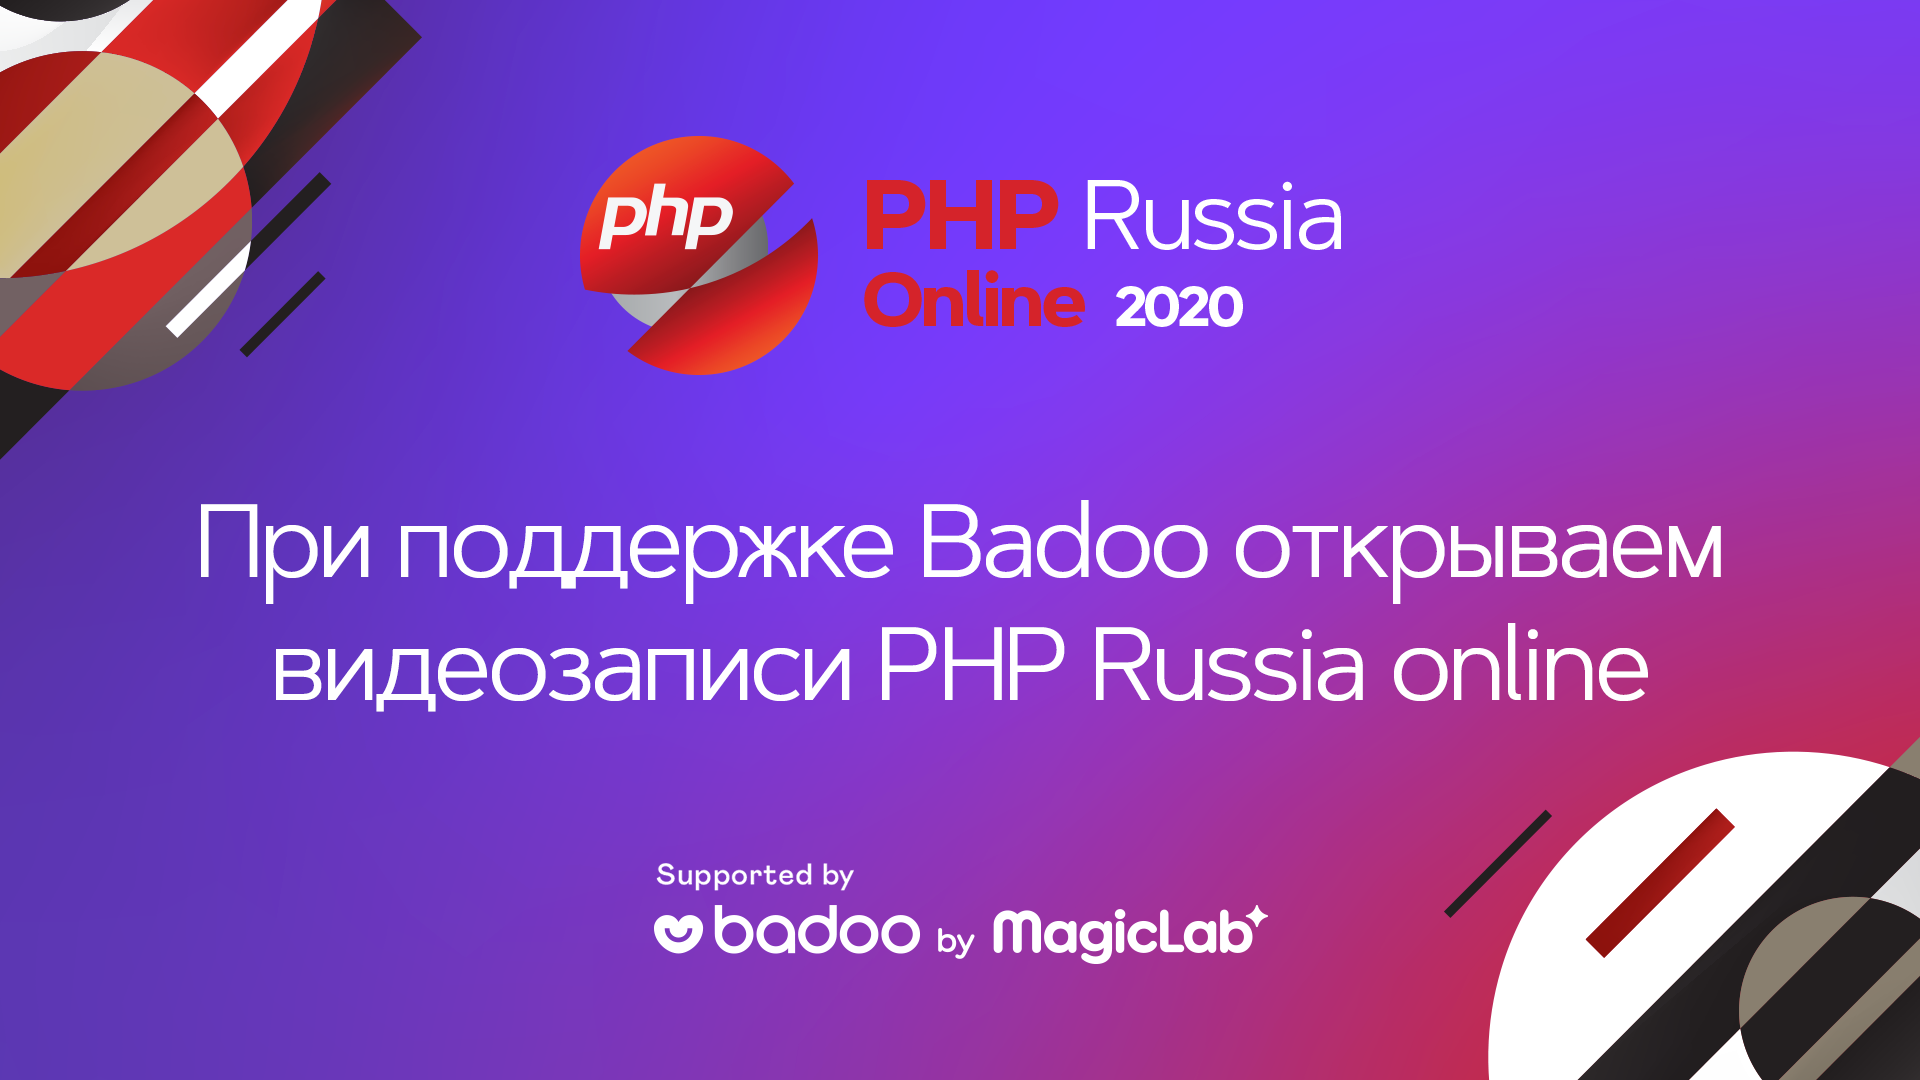 Видеозаписи всех докладов с PHP Russia 2020 Online - 1